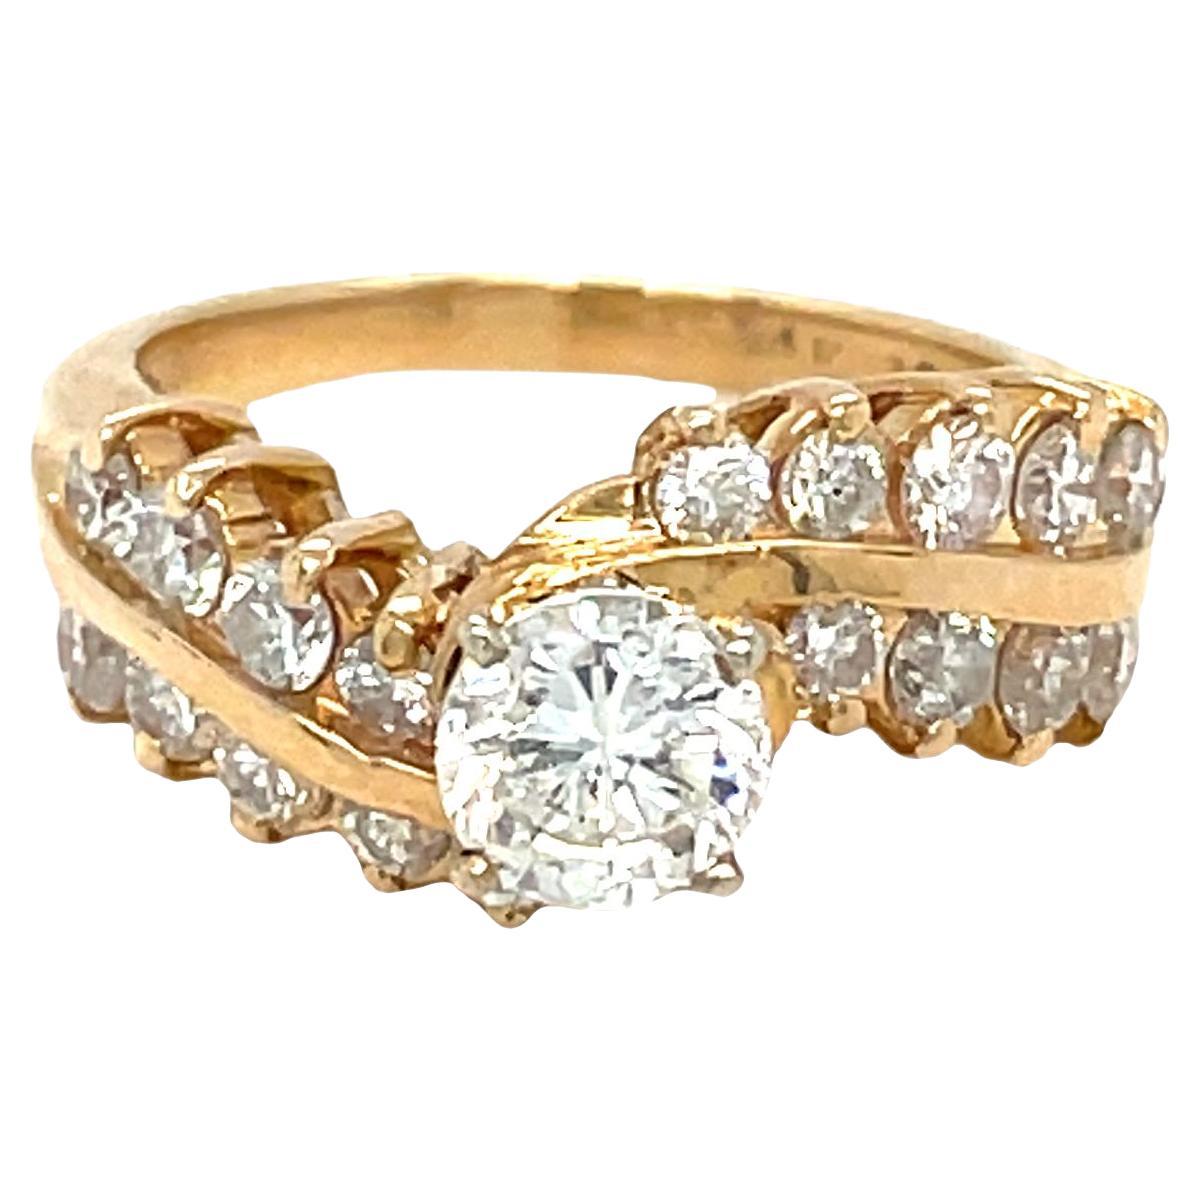 L'étonnante bague de fiançailles à diamant bypass capture la sophistication et l'élégance. La tige torsadée incurvée ajoute une touche d'unicité et symbolise le voyage de l'amour. Réalisée en or jaune 14 carats, cette magnifique bague est ornée de